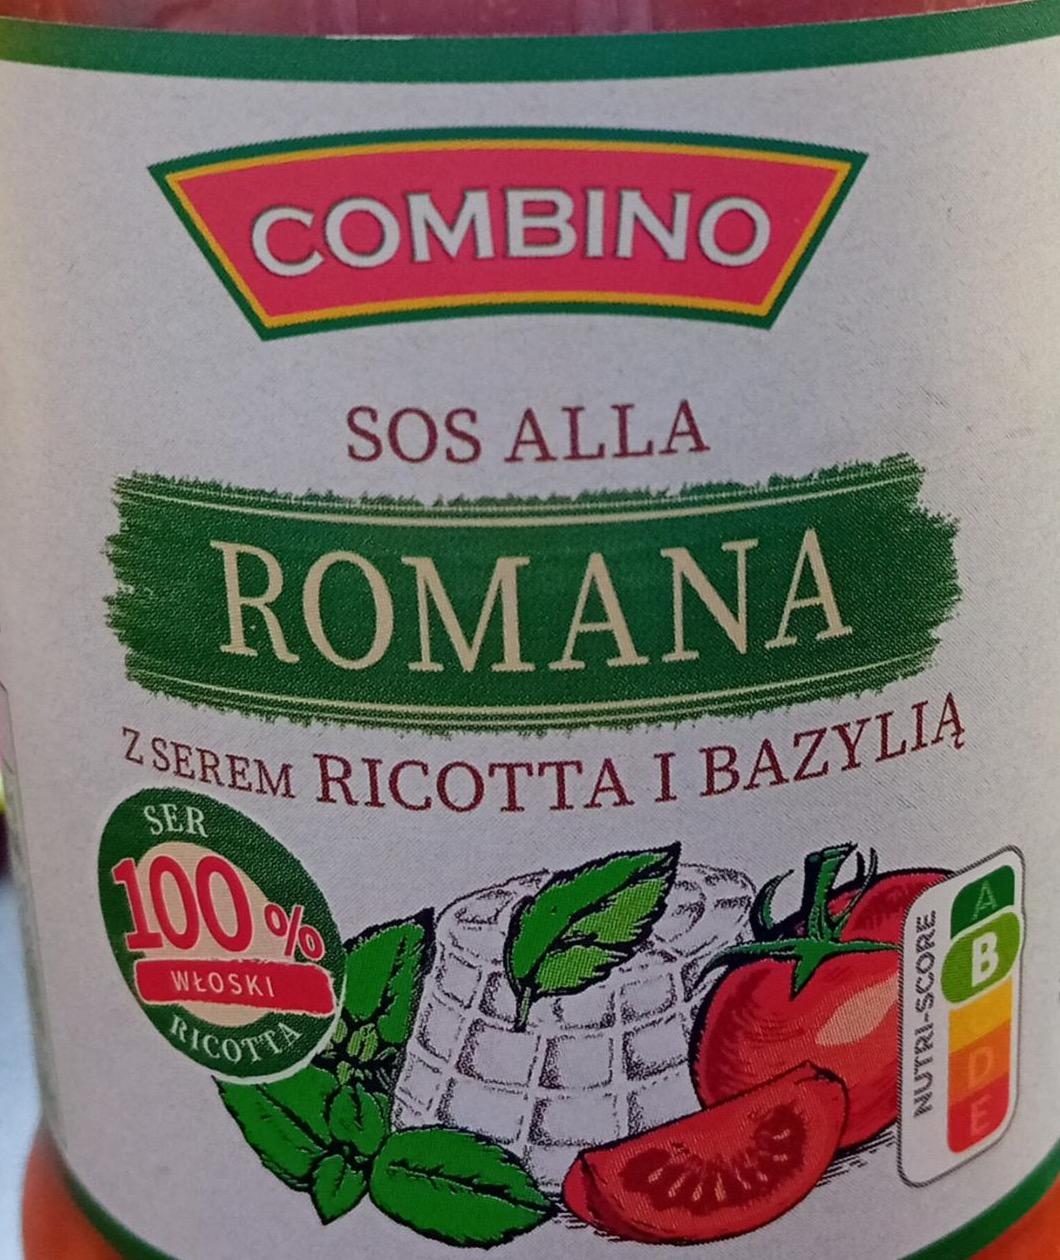 Zdjęcia - Sos alla Romana z serem ricotta i bazylią Combino